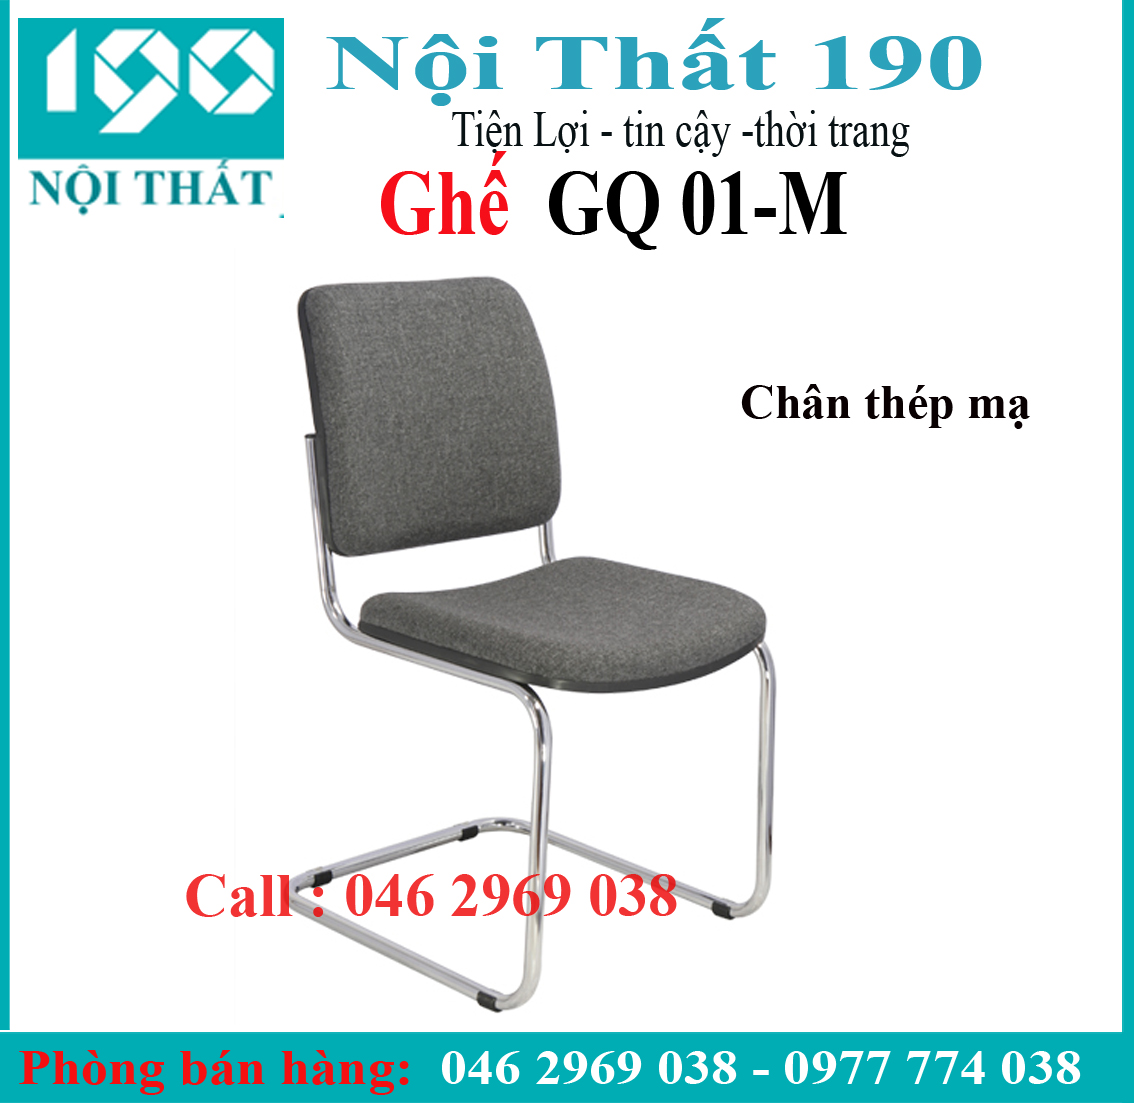 Ghế chân quỳ GQ01-M